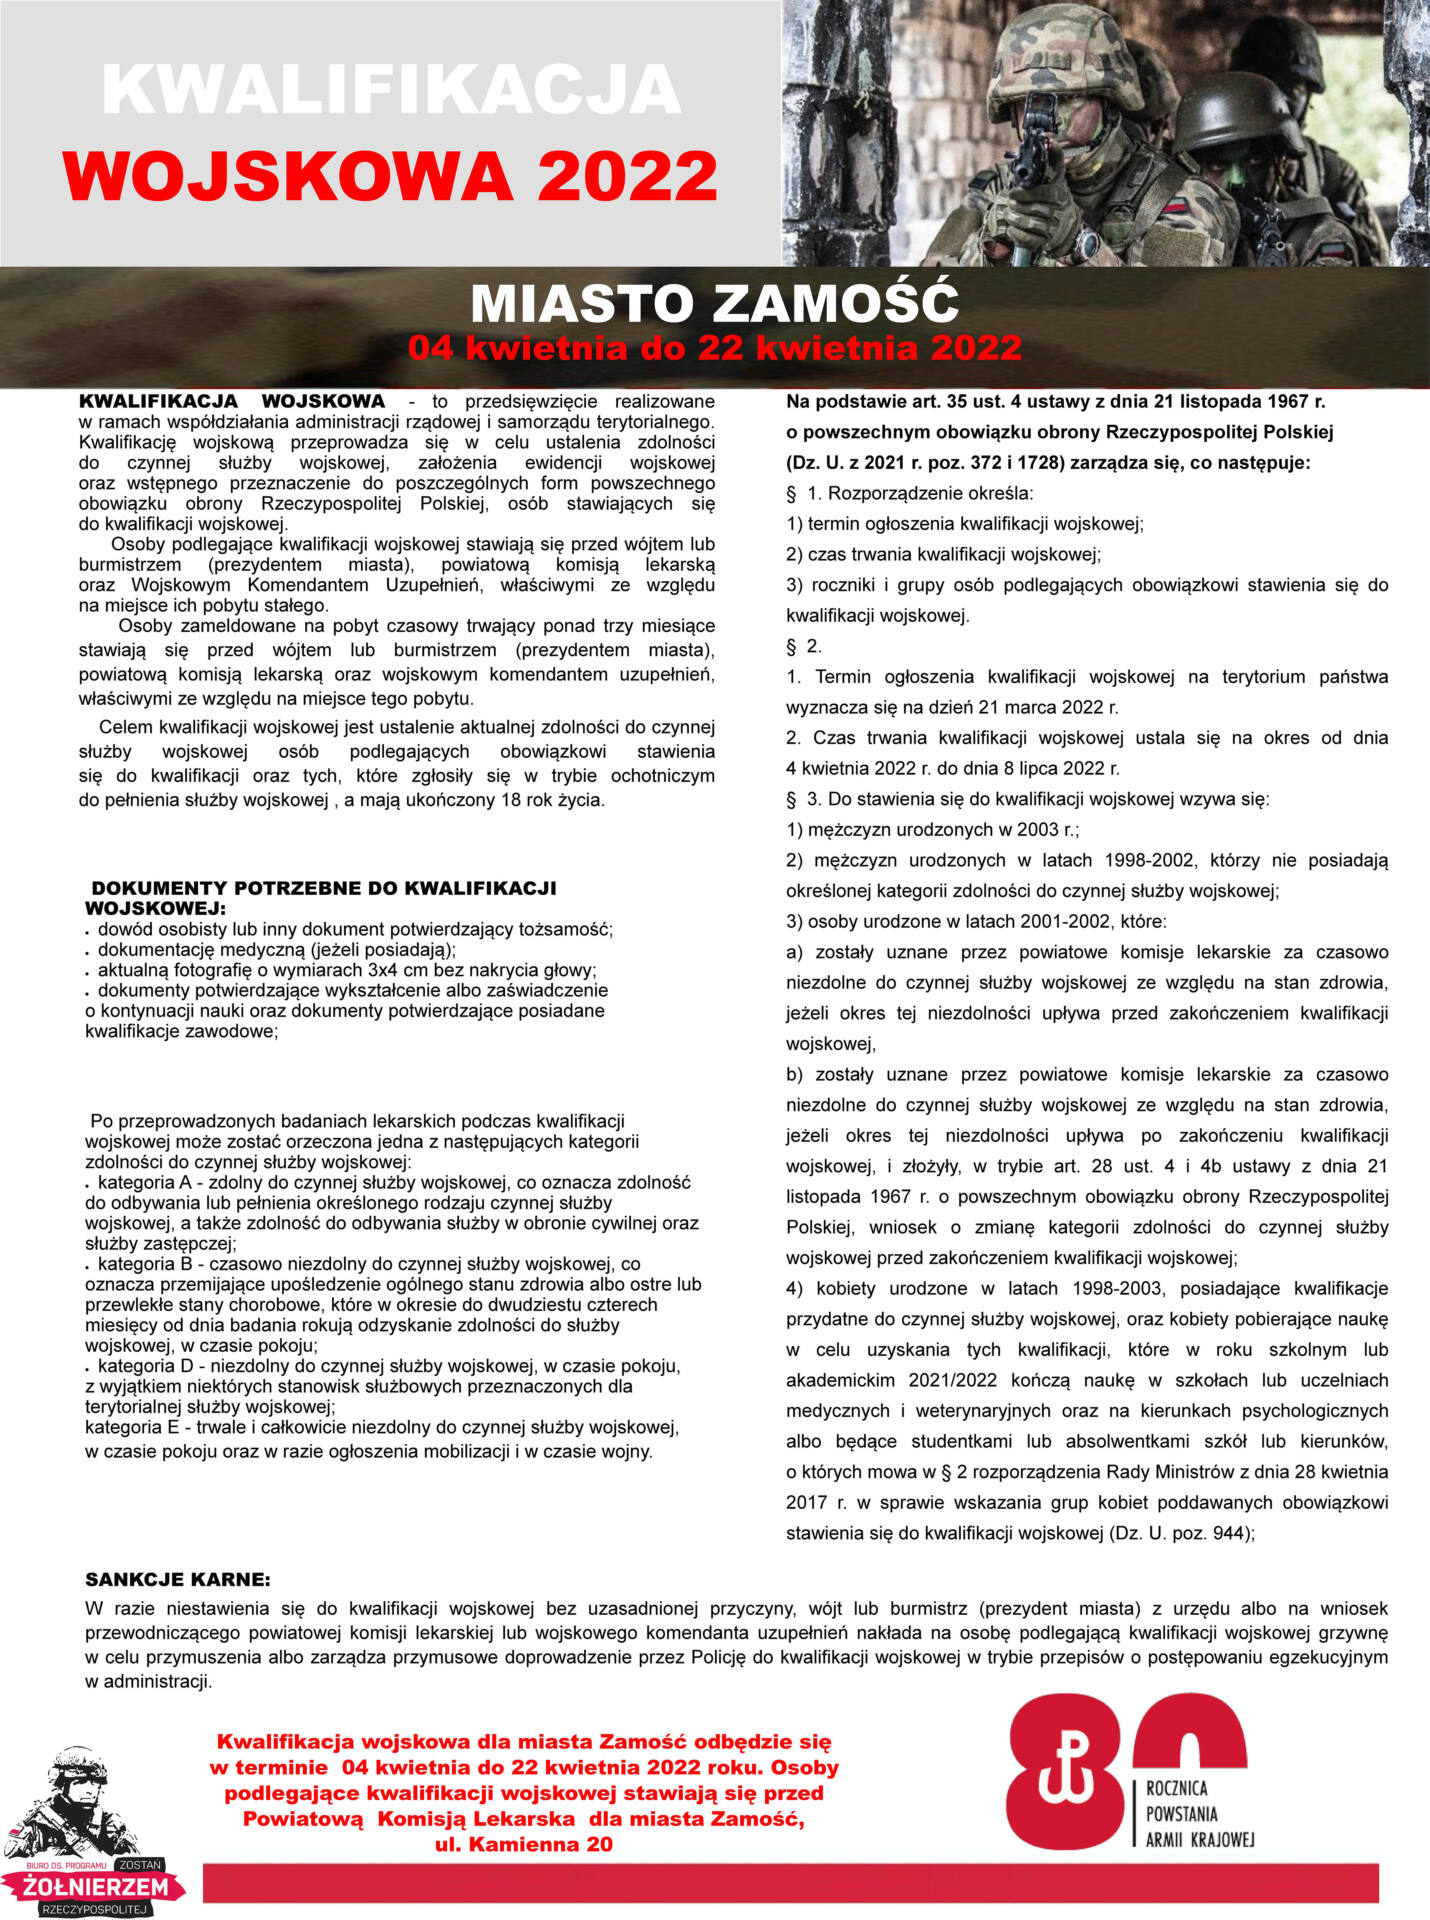 13436 kwalifikacja 2022 plakat miasto zamosc page 0 Kwalifikacja wojskowa dla Miasta Zamość w 2022 roku.